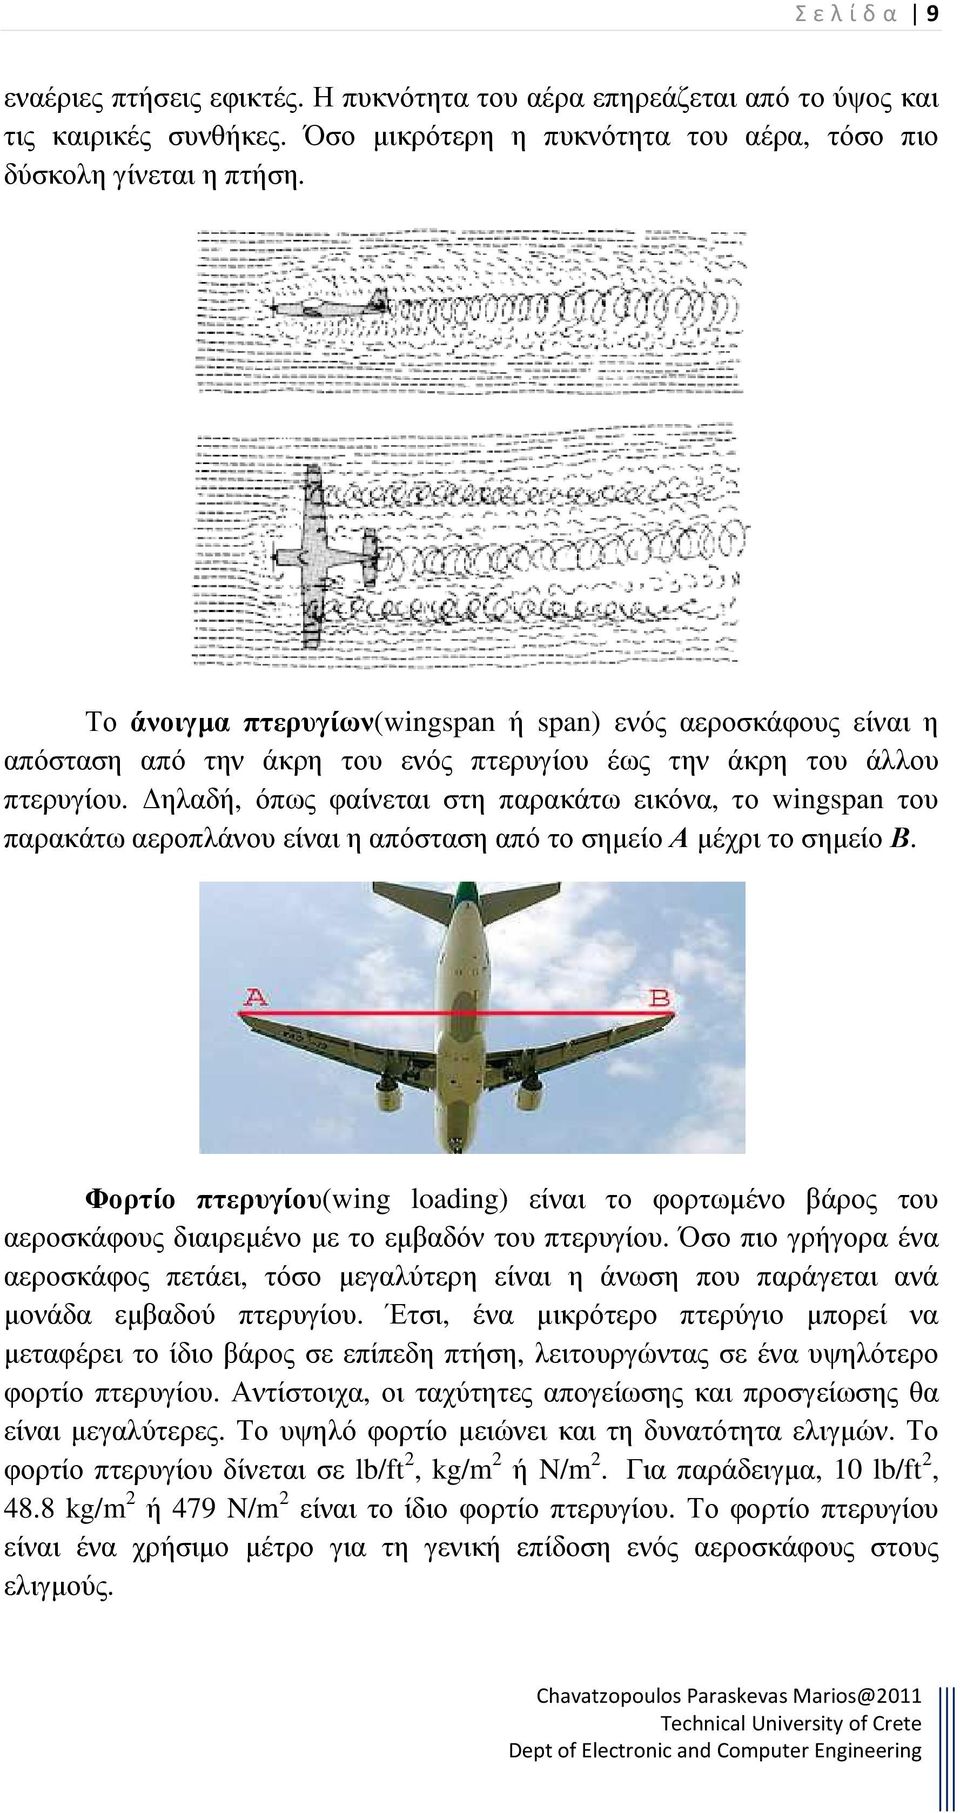 ηλαδή, όπως φαίνεται στη παρακάτω εικόνα, το wingspan του παρακάτω αεροπλάνου είναι η απόσταση από το σηµείο Α µέχρι το σηµείο Β.